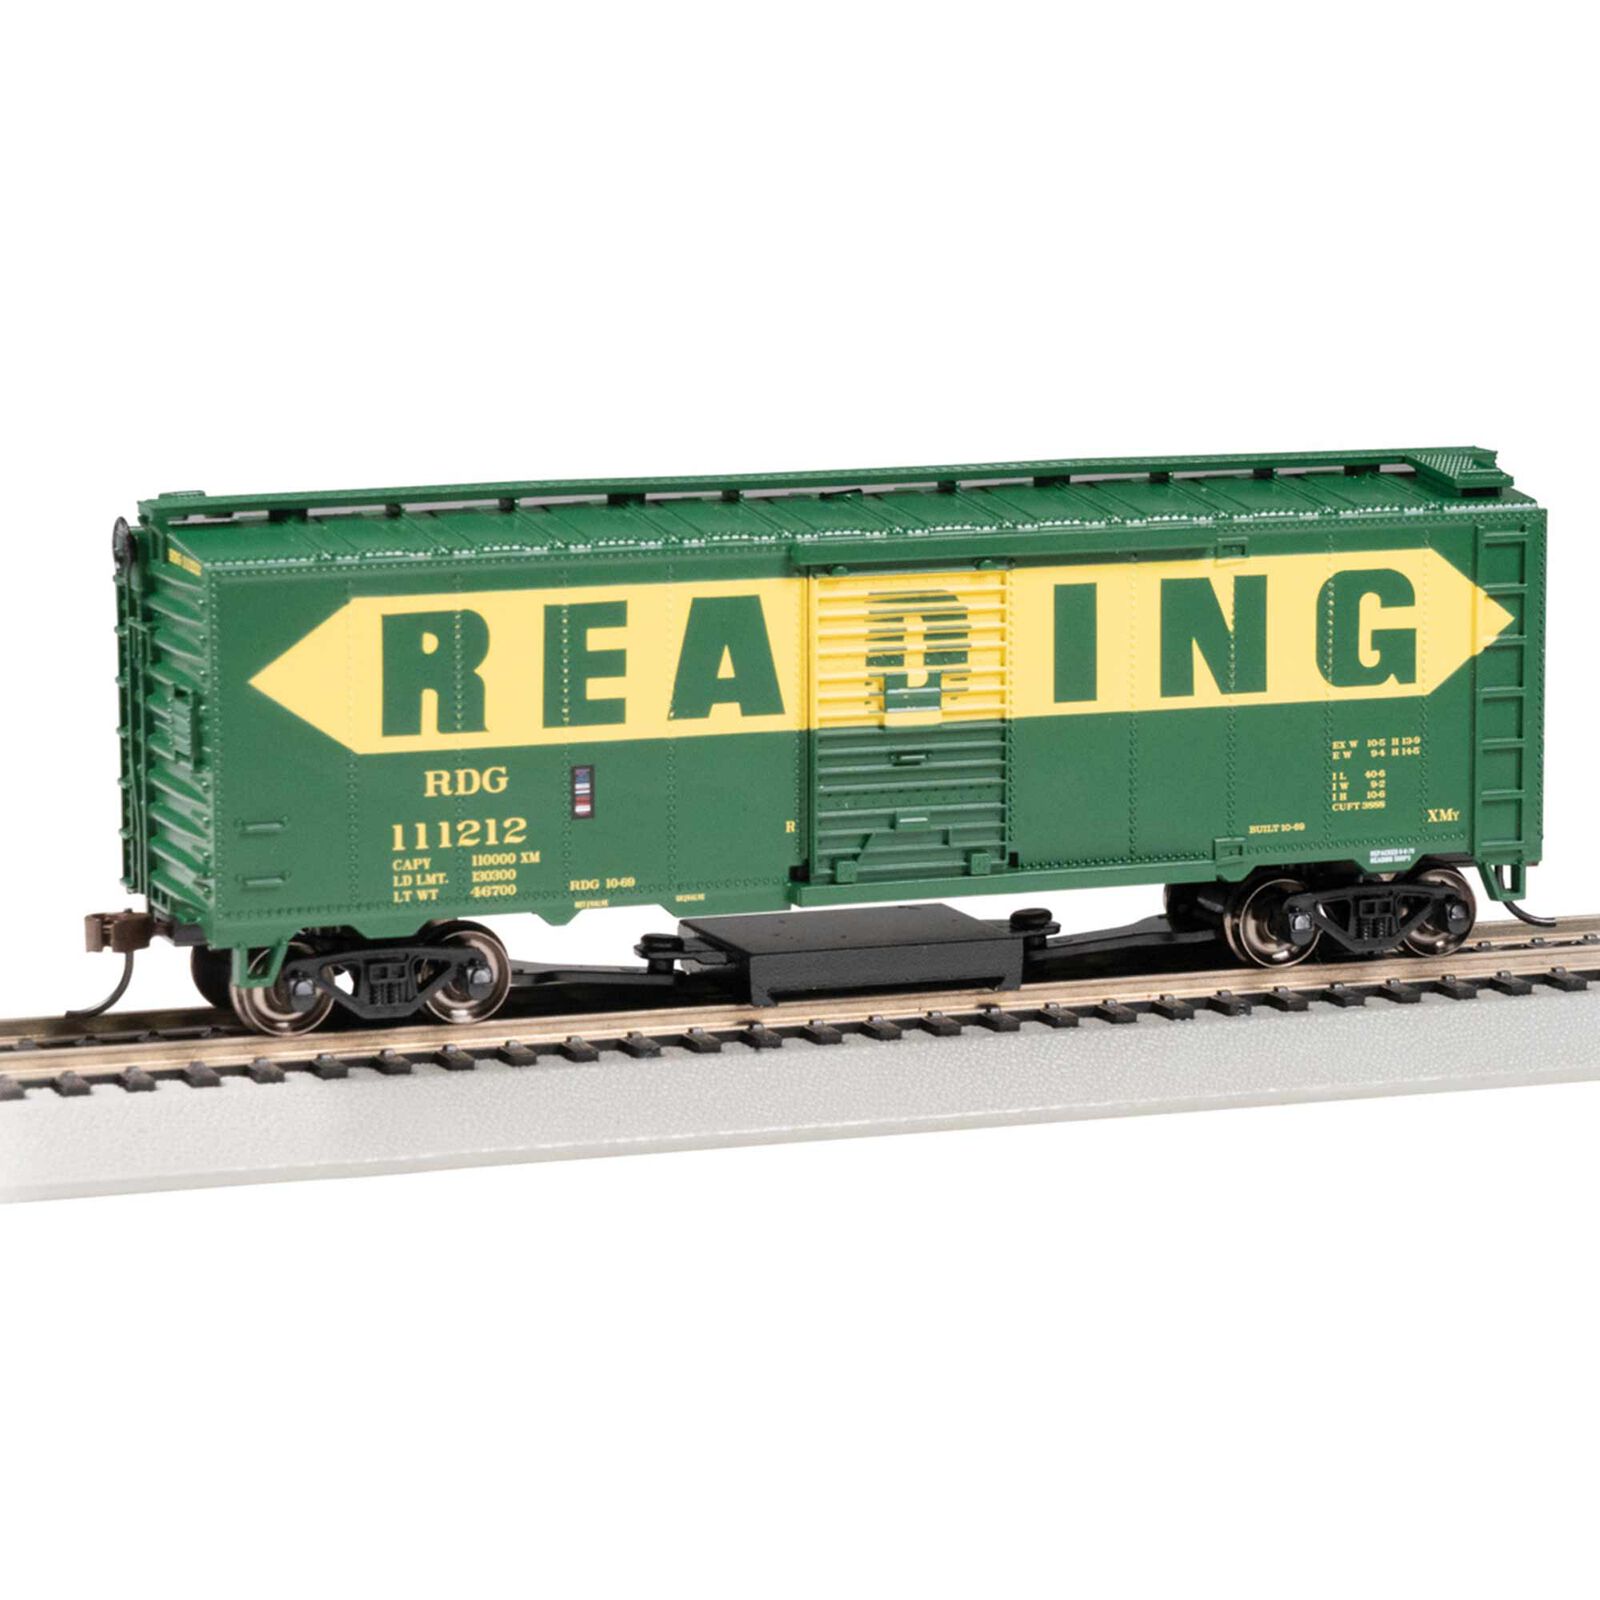 HO Track Cleaning 40' Box Car - Reading #111212 - HO